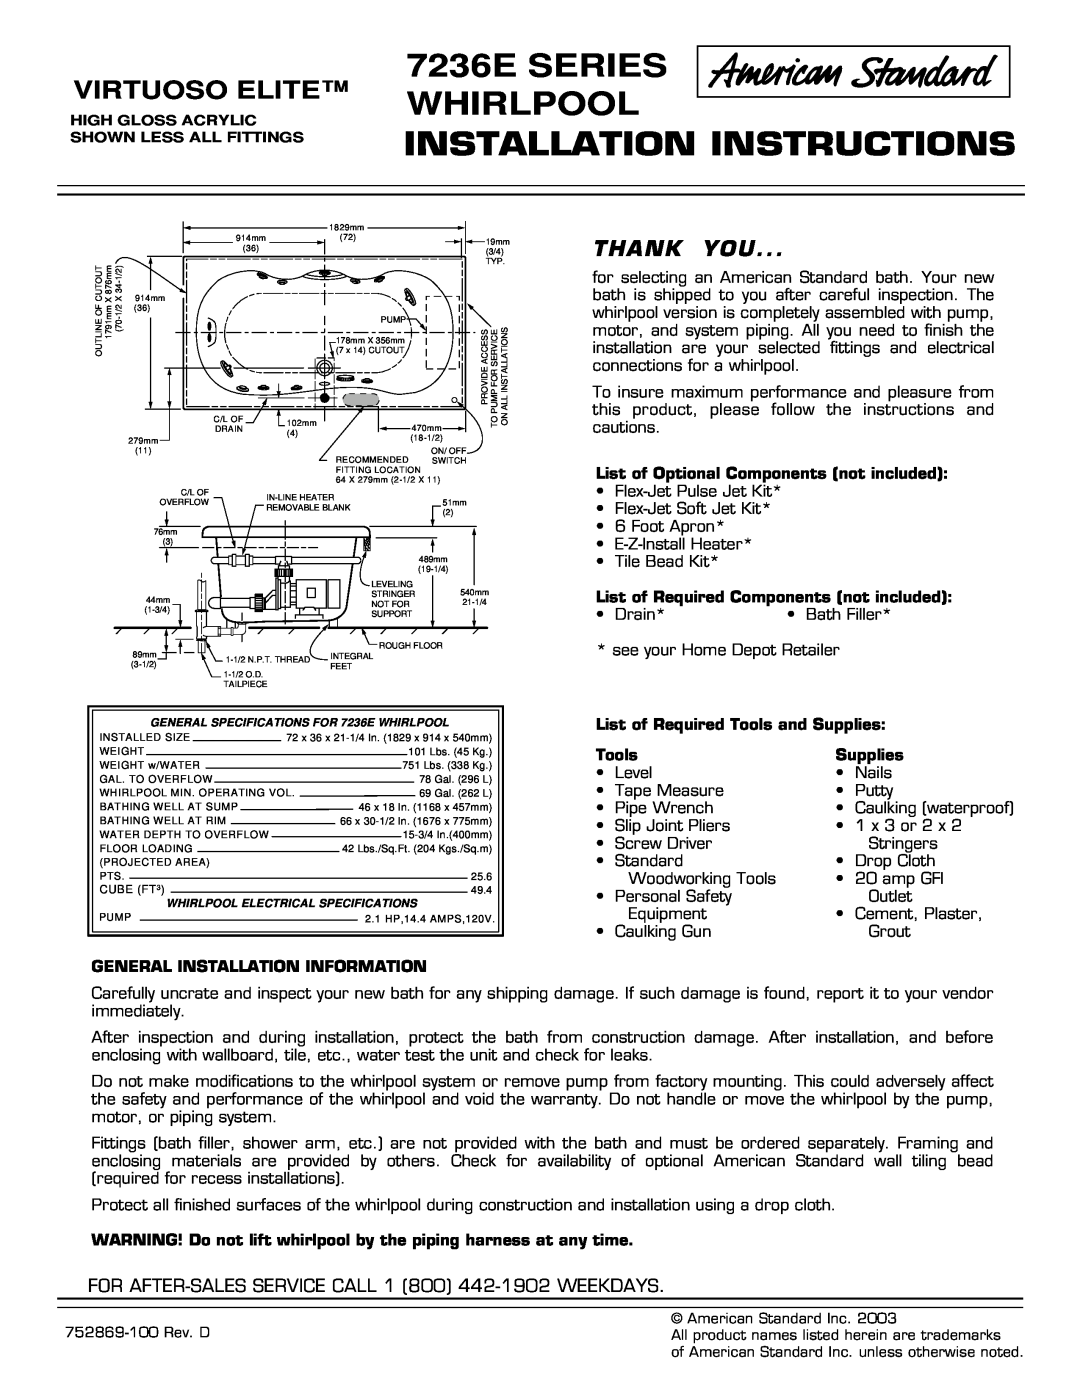 American Standard 7236E Series installation instructions 7236E SERIES WHIRLPOOL, Installation Instructions, Virtuoso Elite 